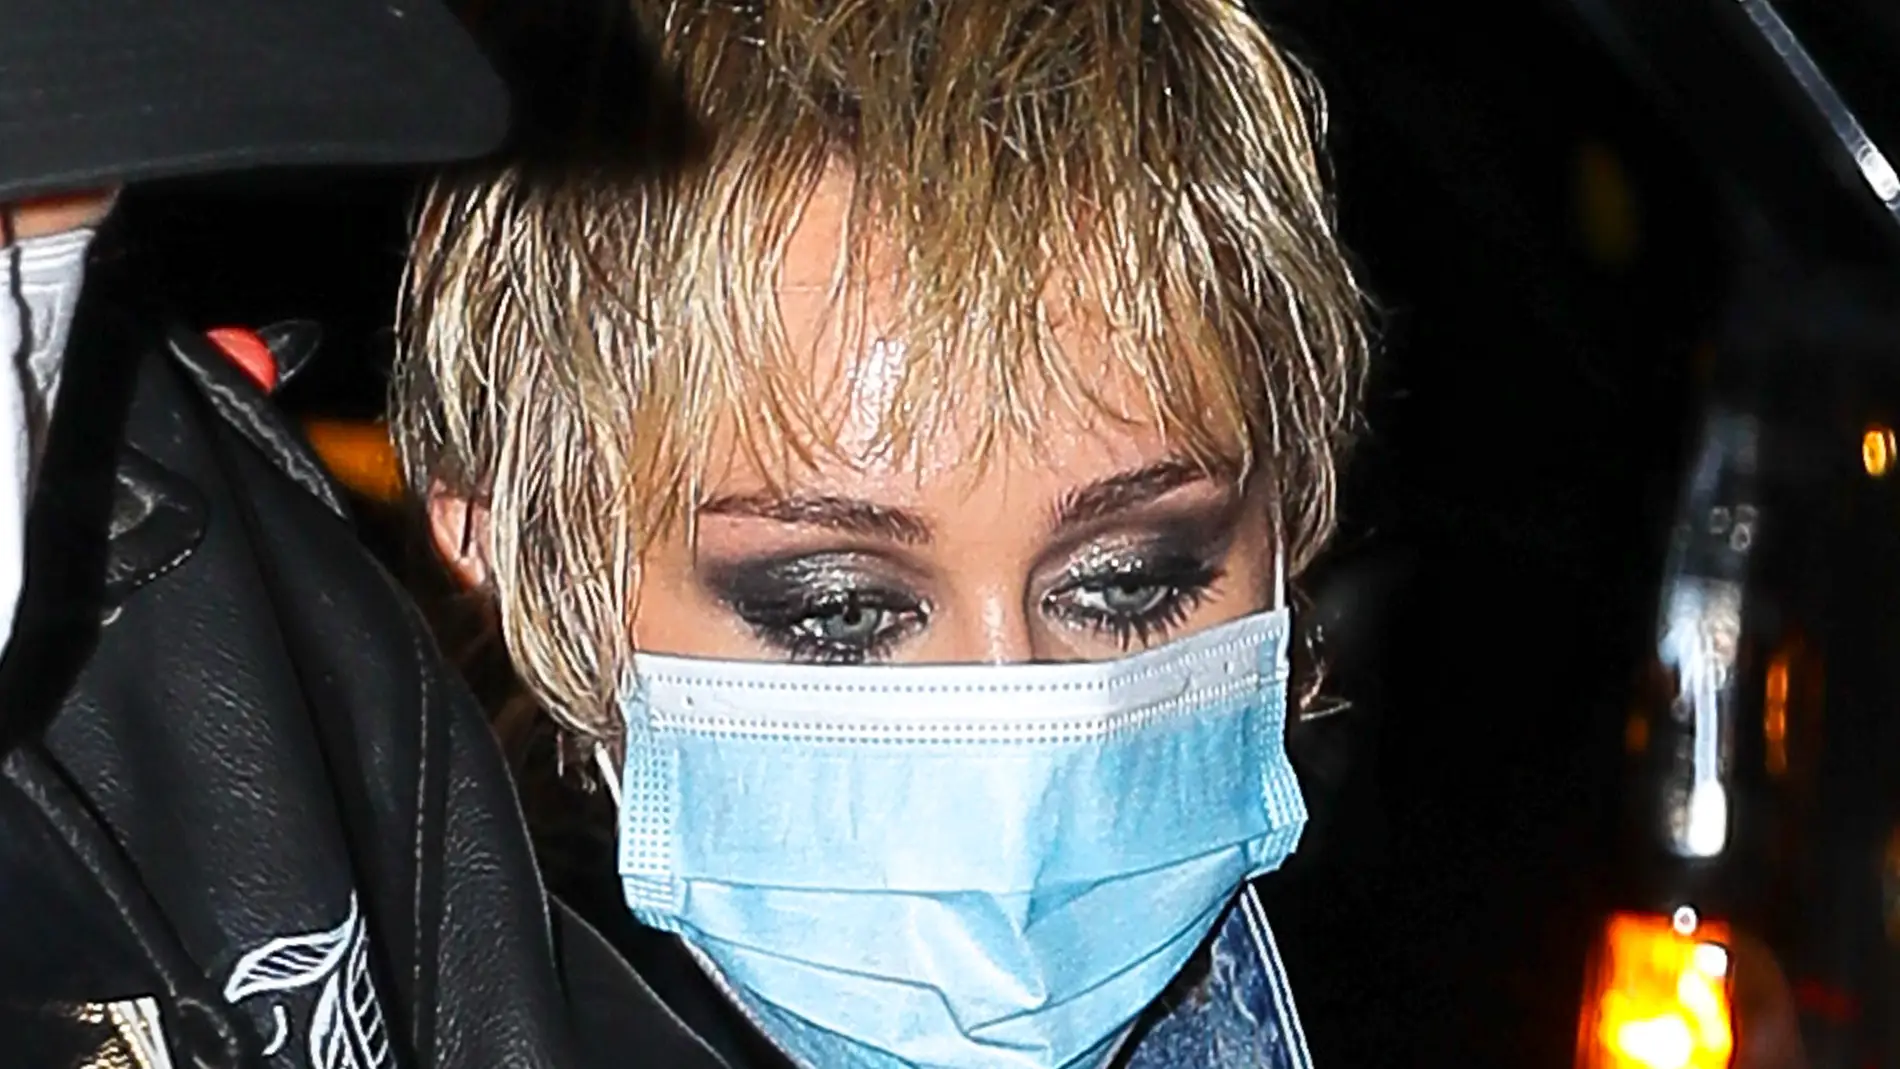 La cara de agotamiento de Miley Cyrus tras una larga jornada 